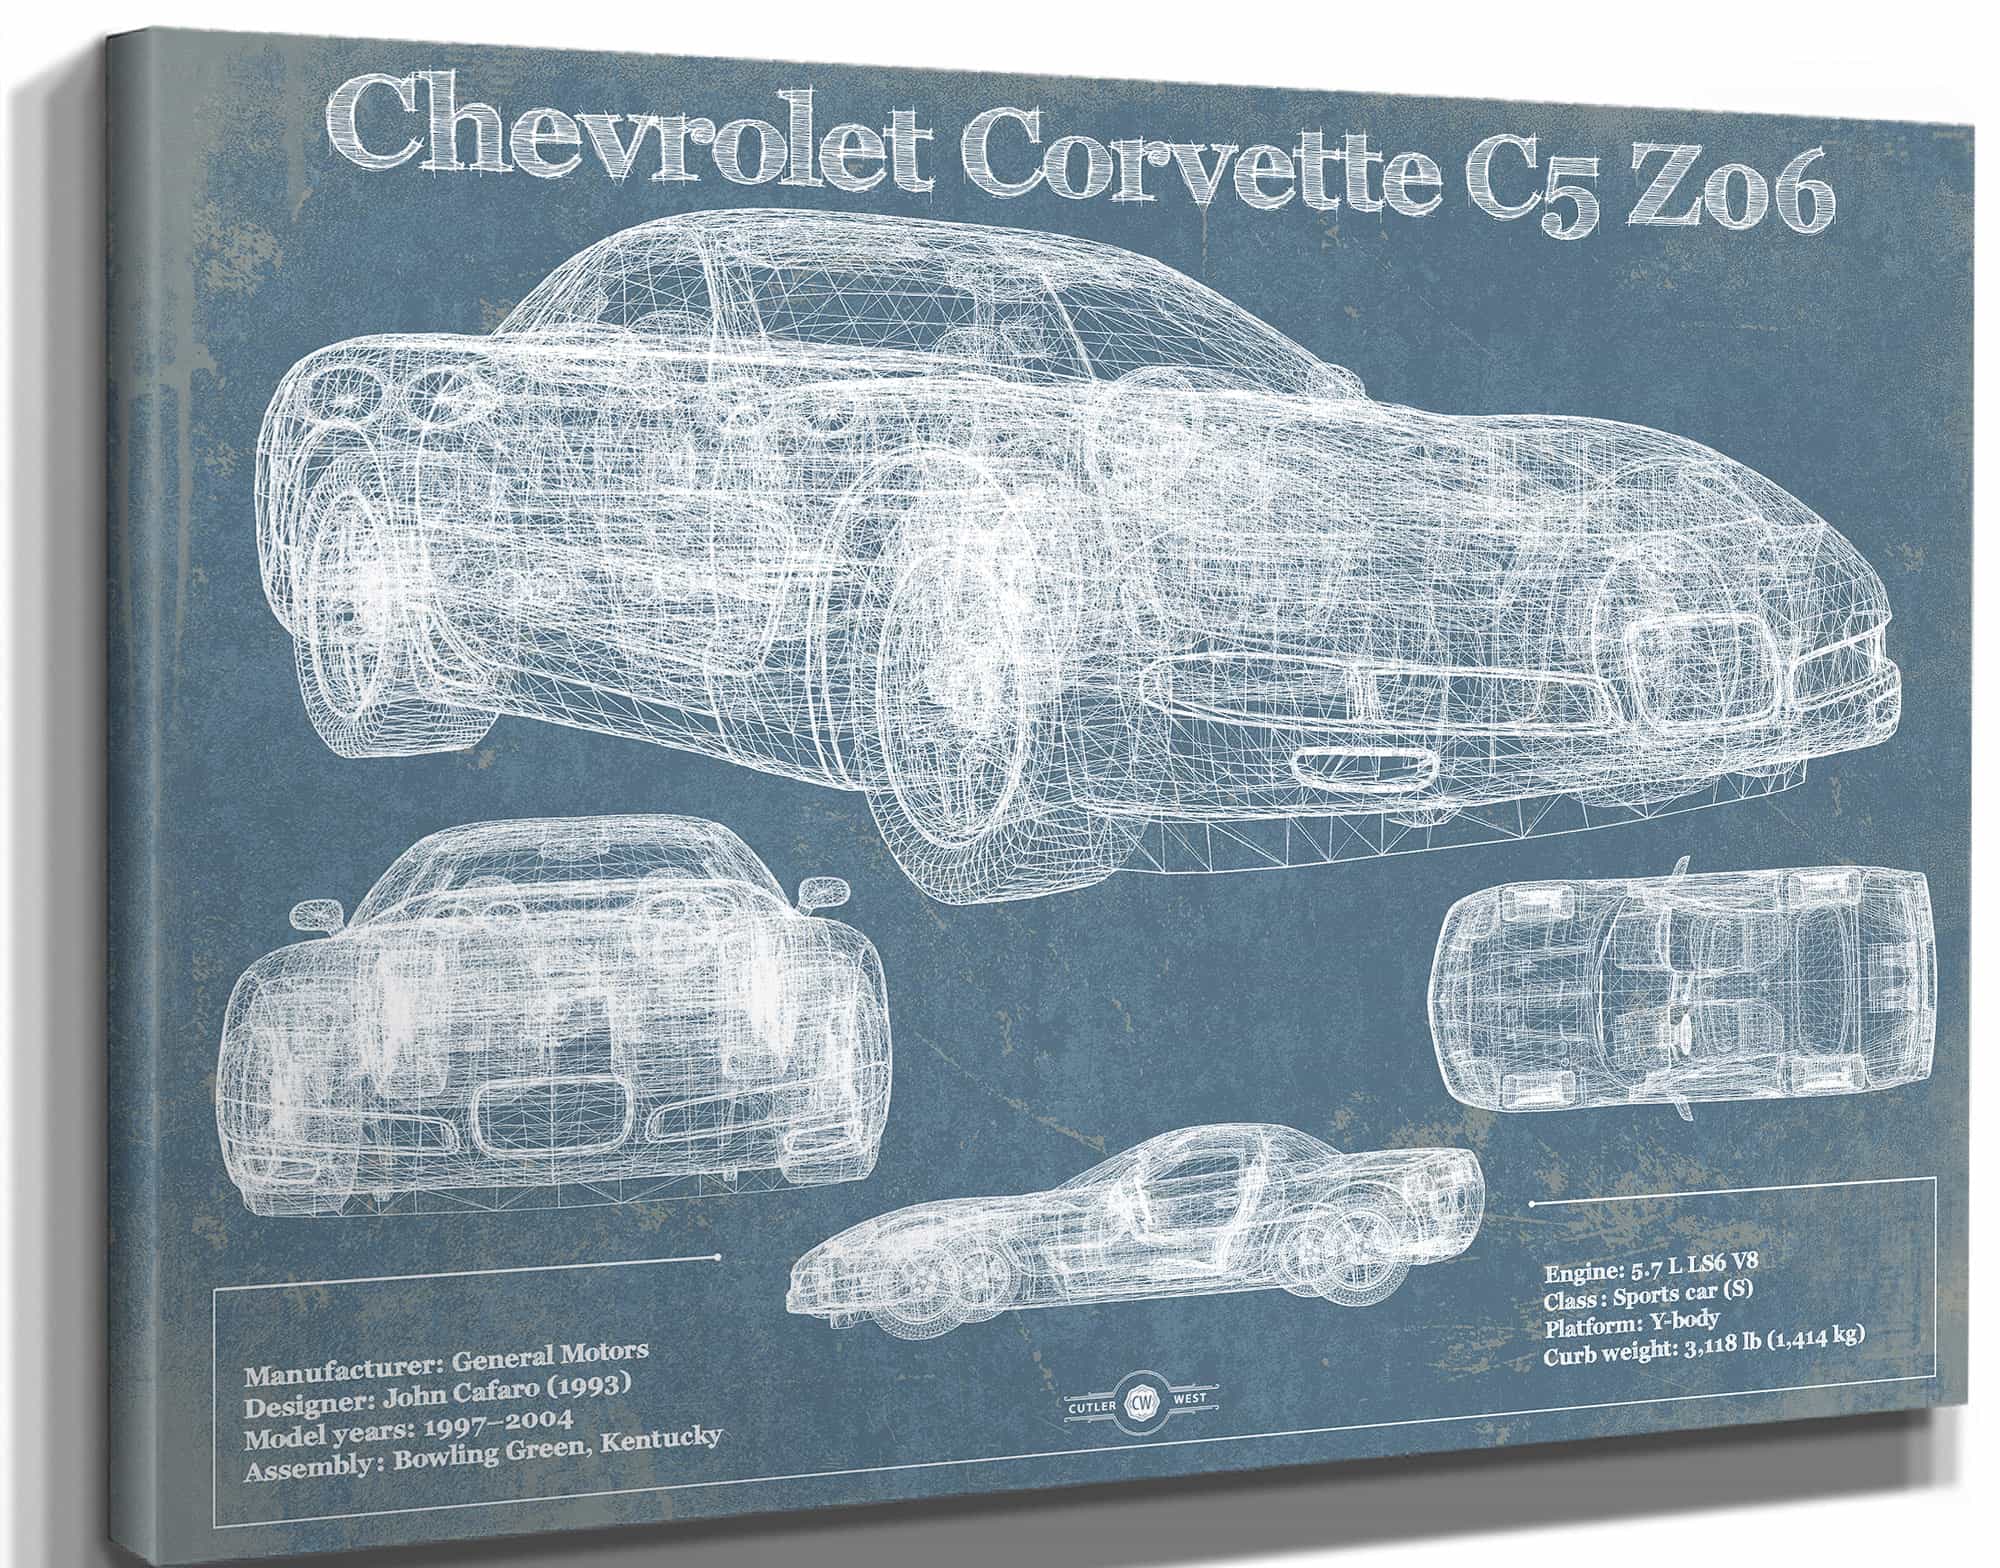 Chevrolet Corvette C5 Z06 Convertible Blueprint Vintage Auto Patent Print